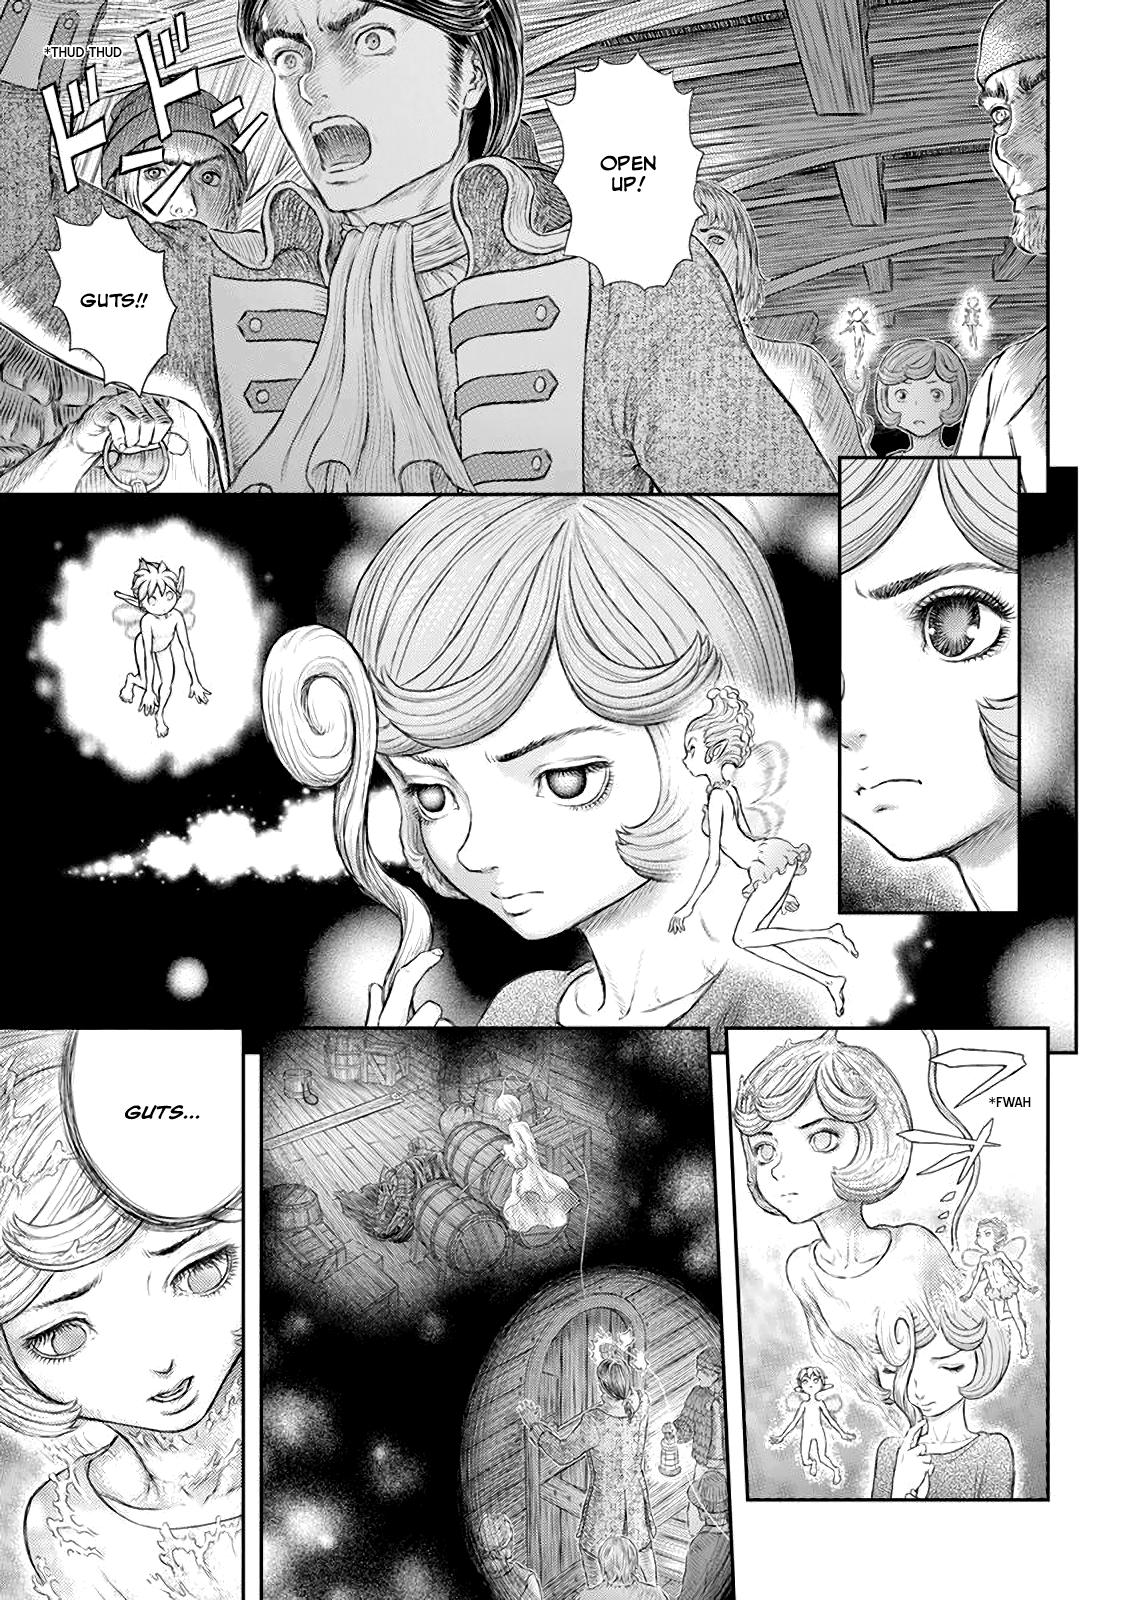 Berserk Manga Chapter 371 image 02